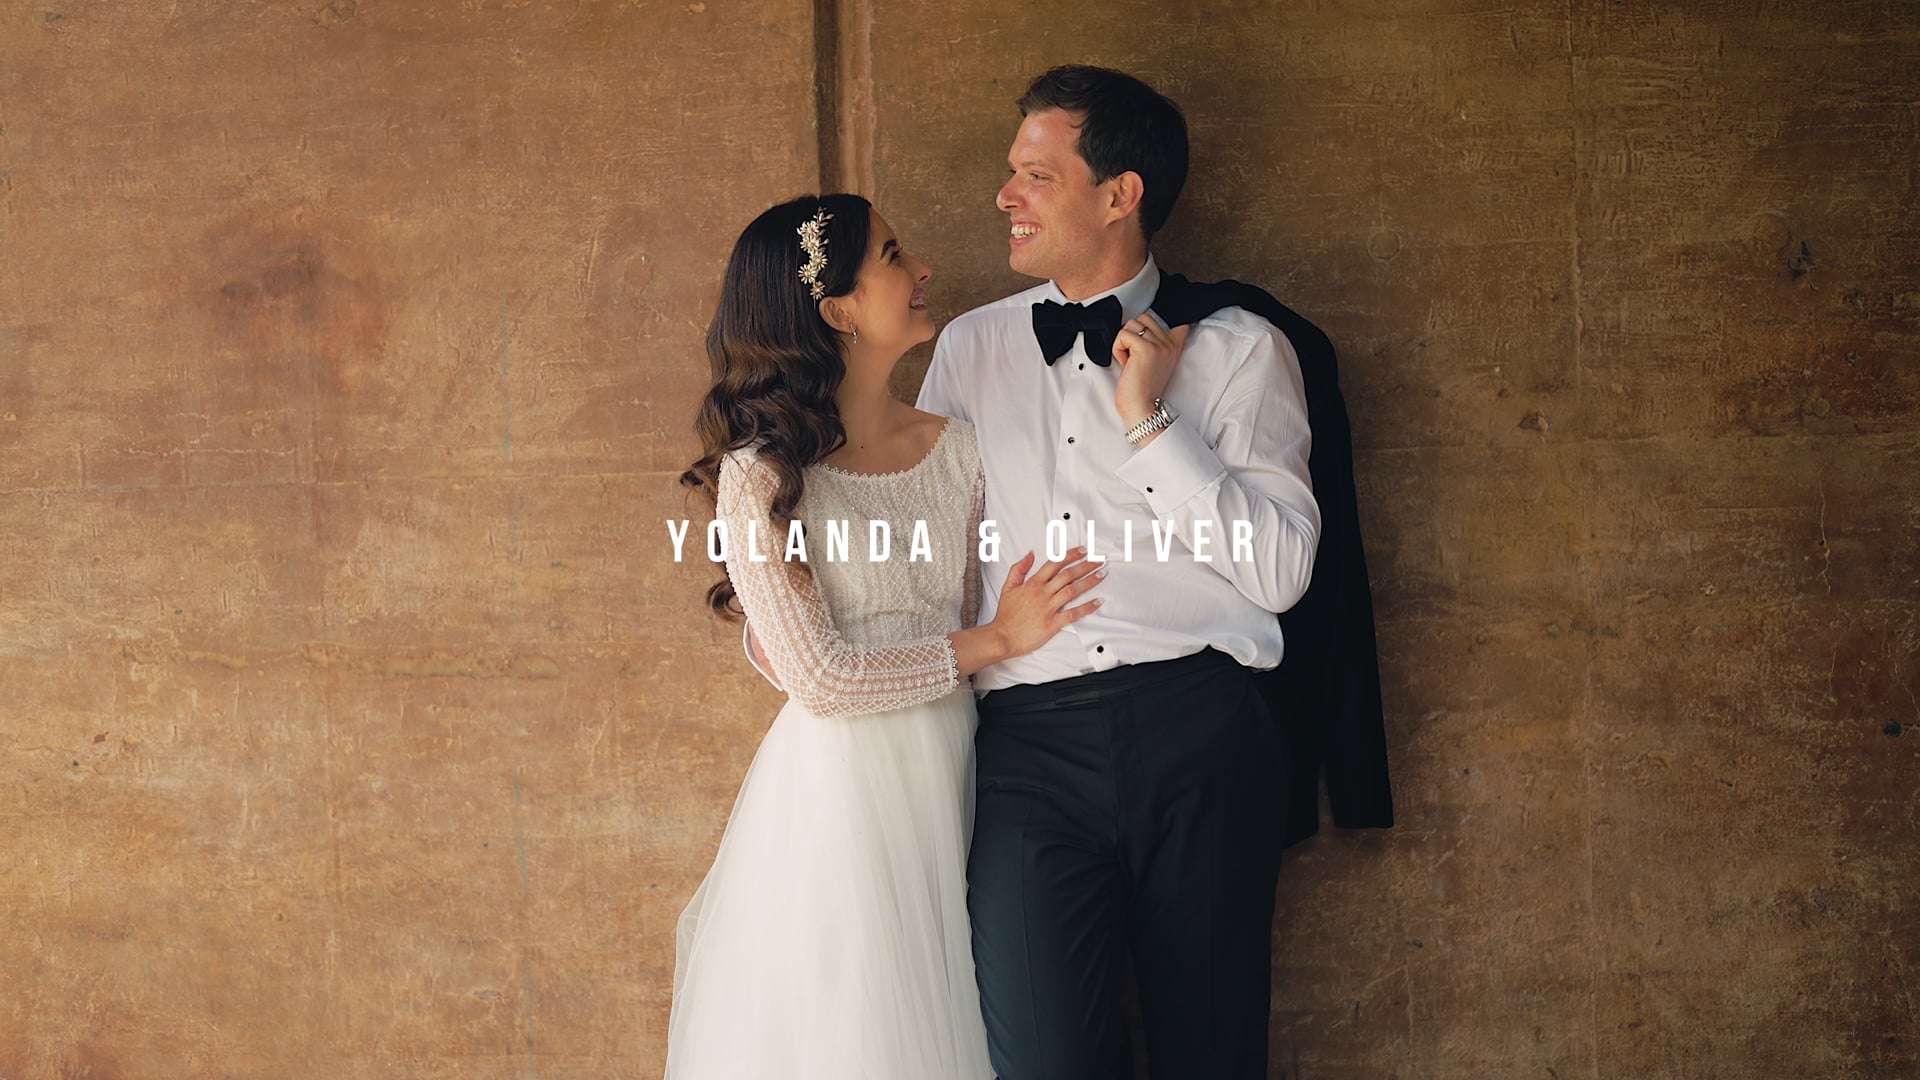 Yolanda & Oliver - Wedding Film (4K)